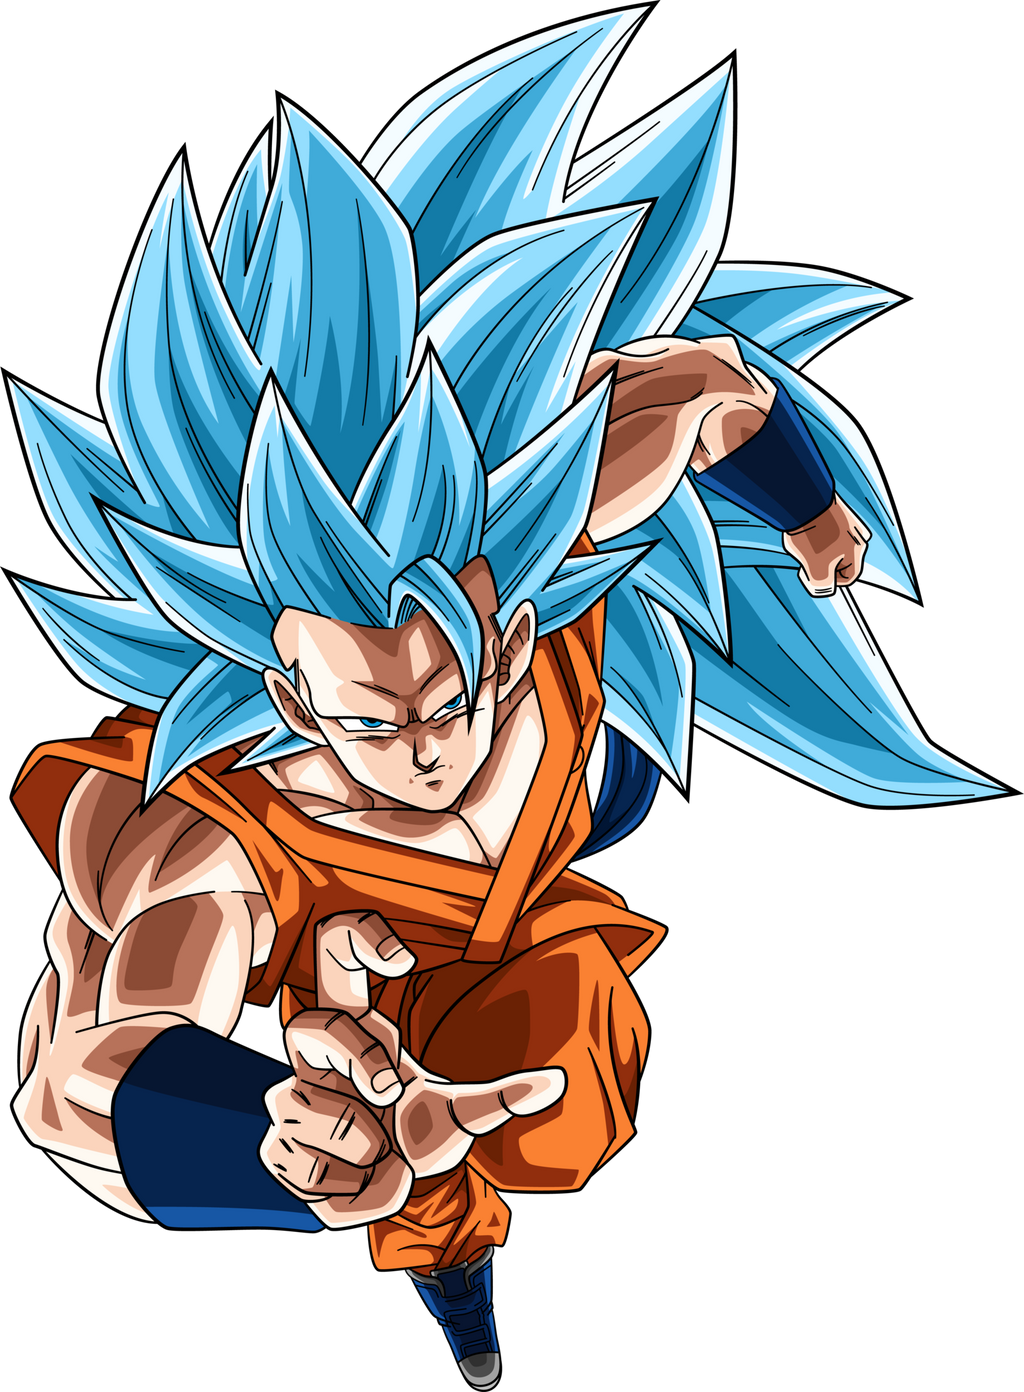 Goku (Super Saiyan Blue) by MdShakibulHasan on DeviantArt